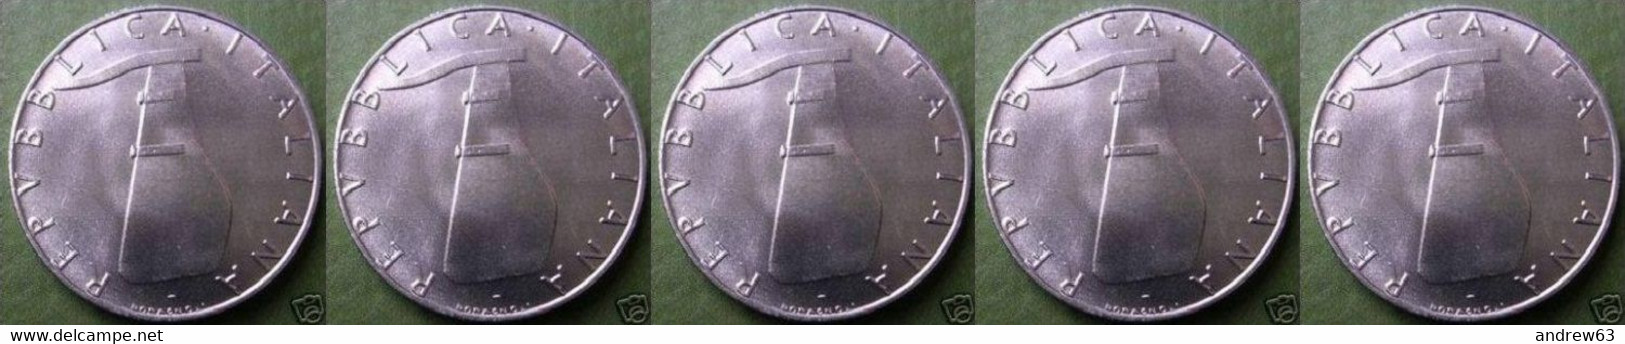 ITALIA - Lire 5 1980 - FDC/Unc Da Rotolino/from Roll 5 Monete/5 Coins - 5 Lire